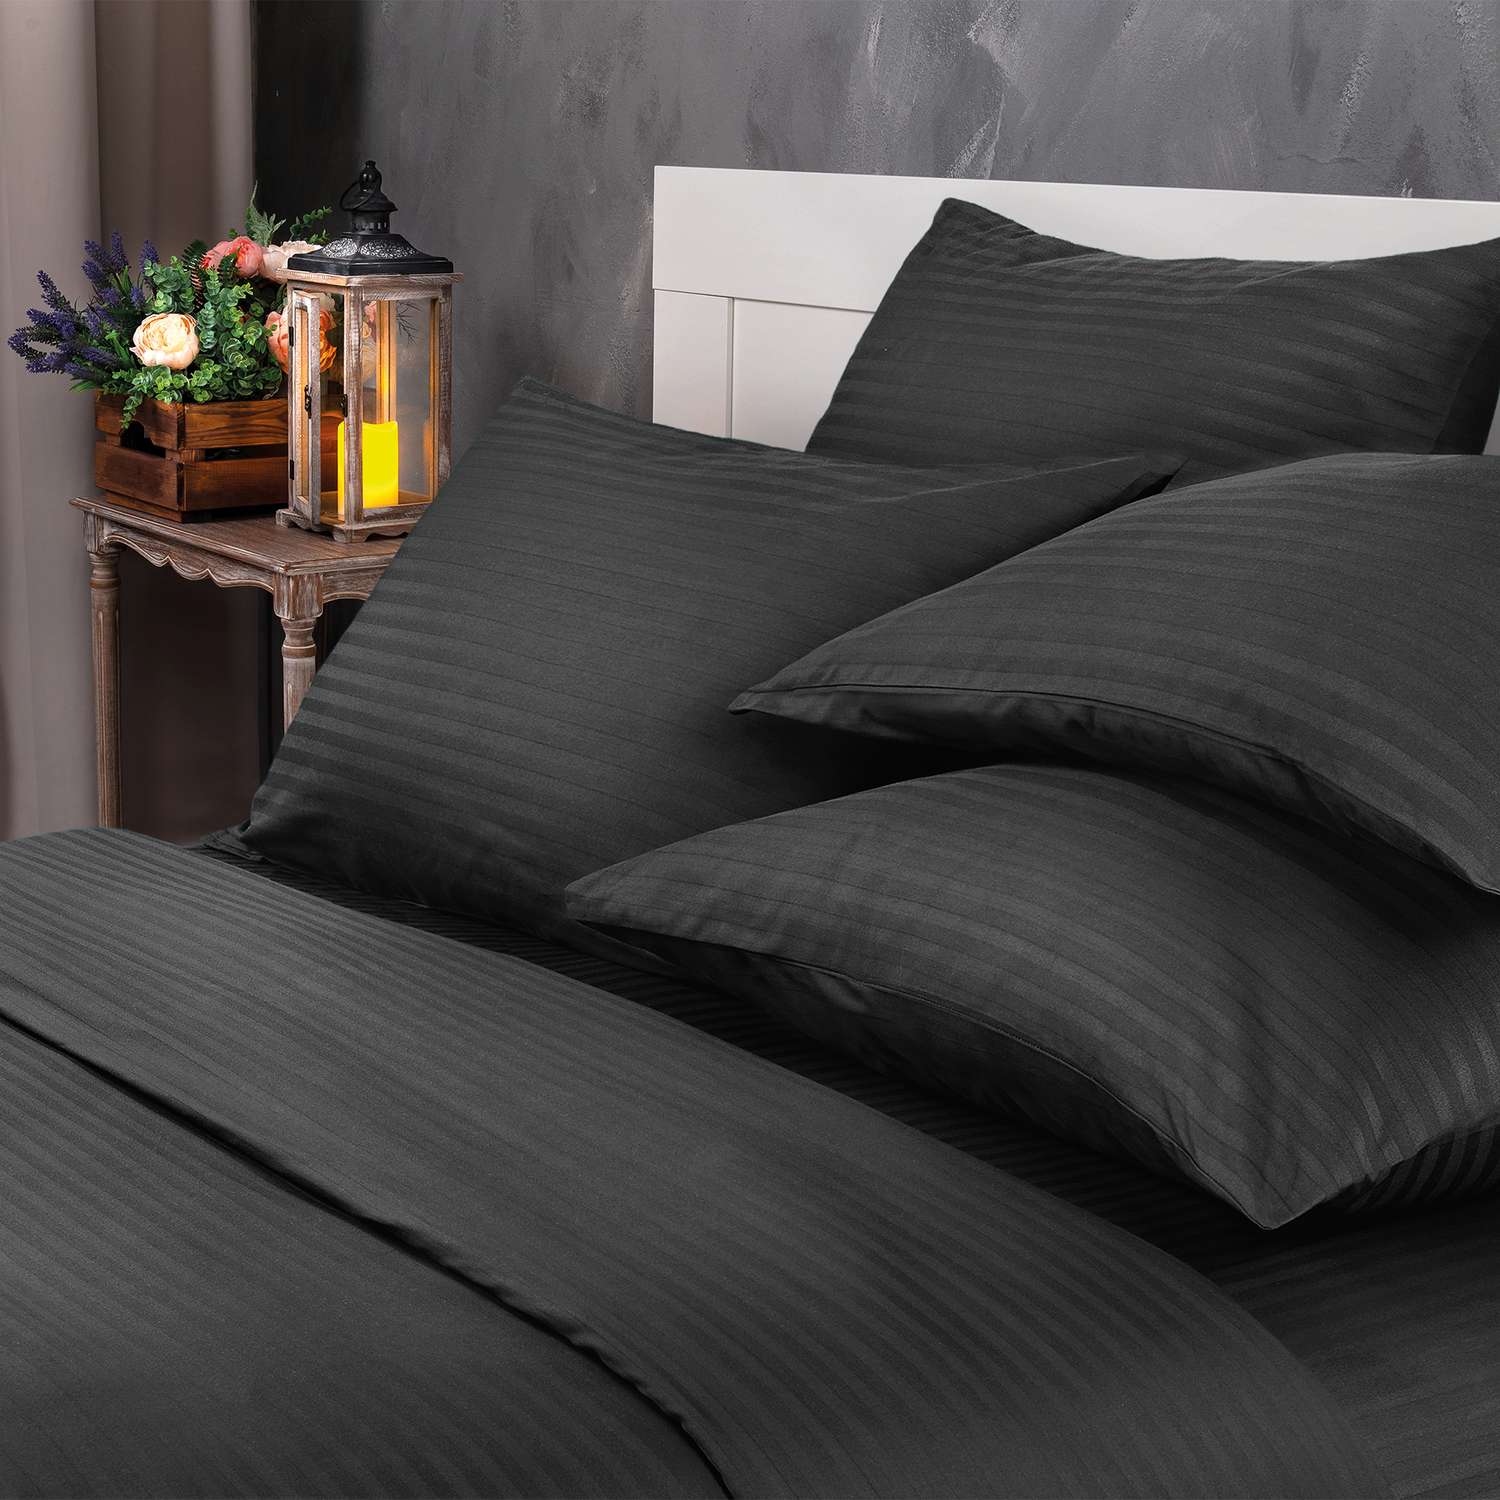 Комплект постельного белья Verossa 1.5СП Black страйп-сатин наволочки 70х70см 100% хлопок - фото 2